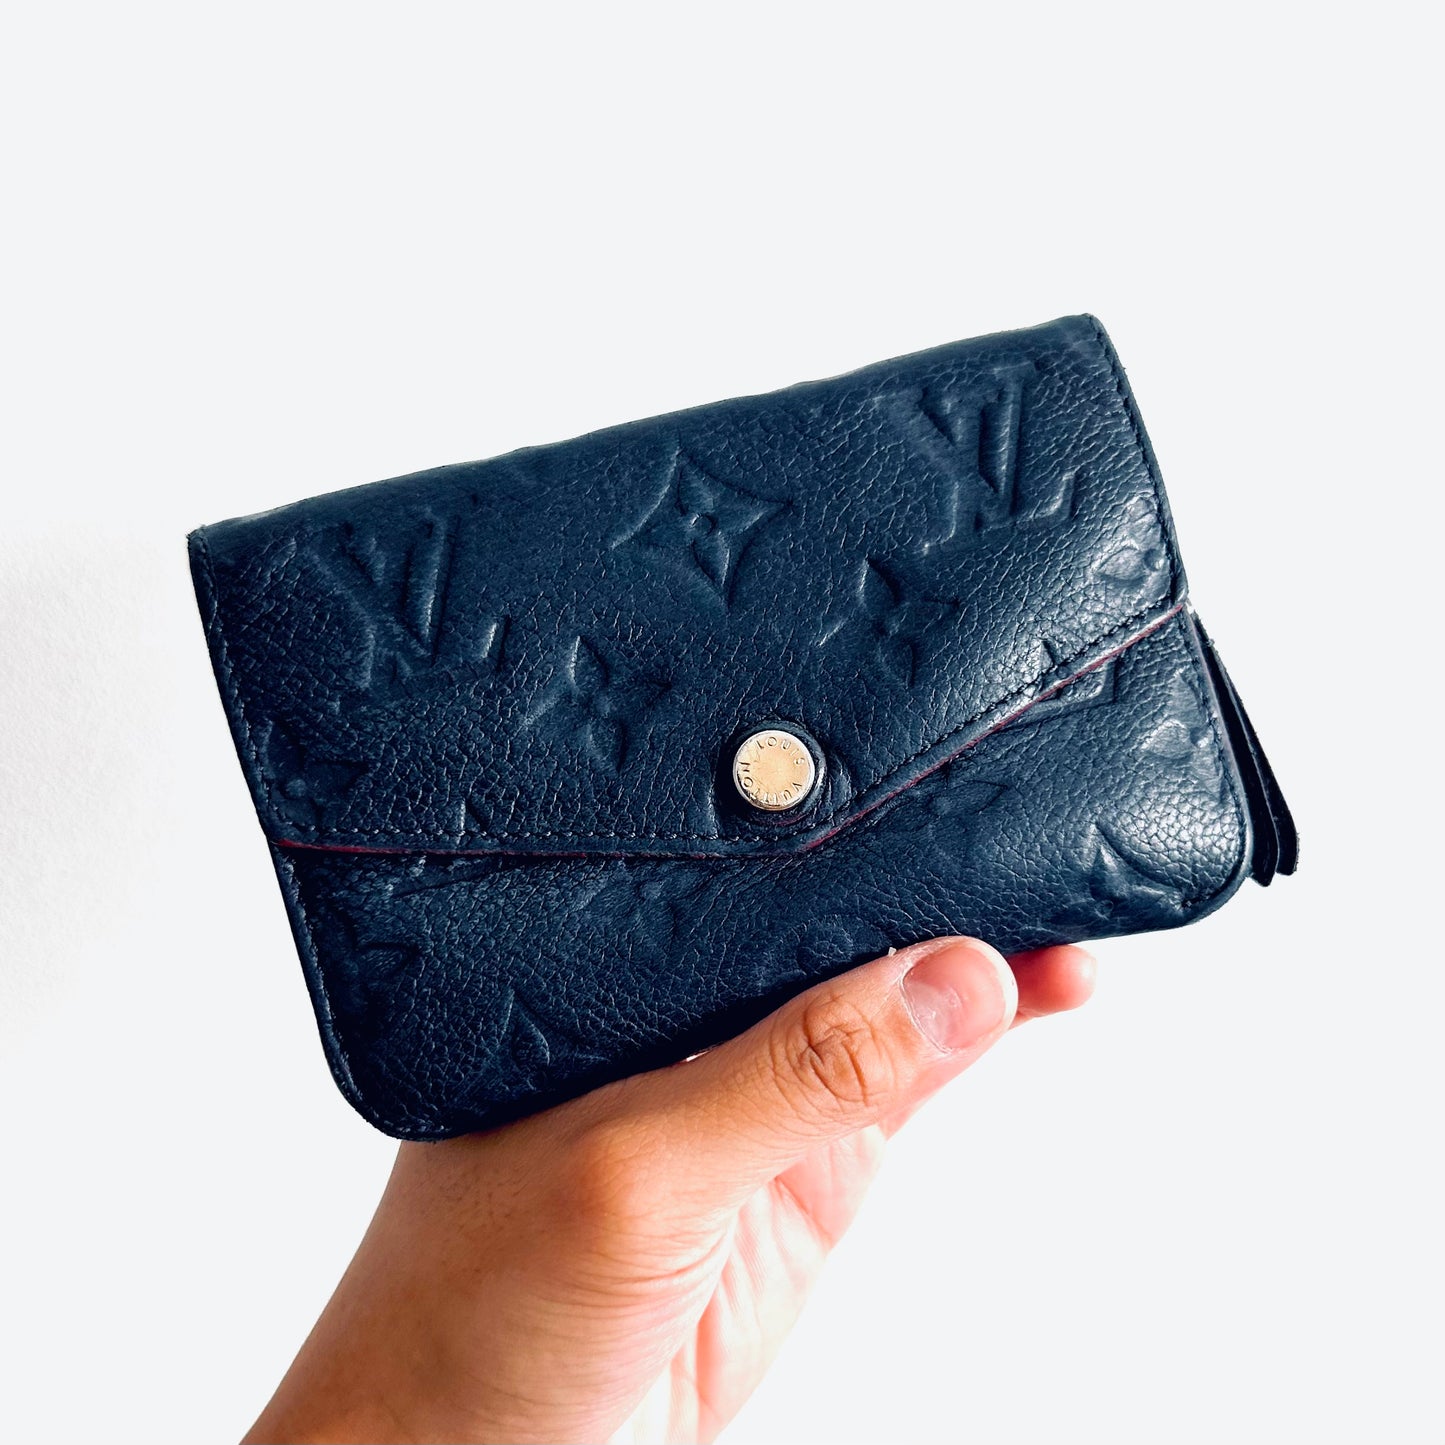 Louis Vuitton LV Navy Blue GHW Empreinte Leather Monogram Logo Pochette Compact Wallet Key Cles Pouch Clutch Case